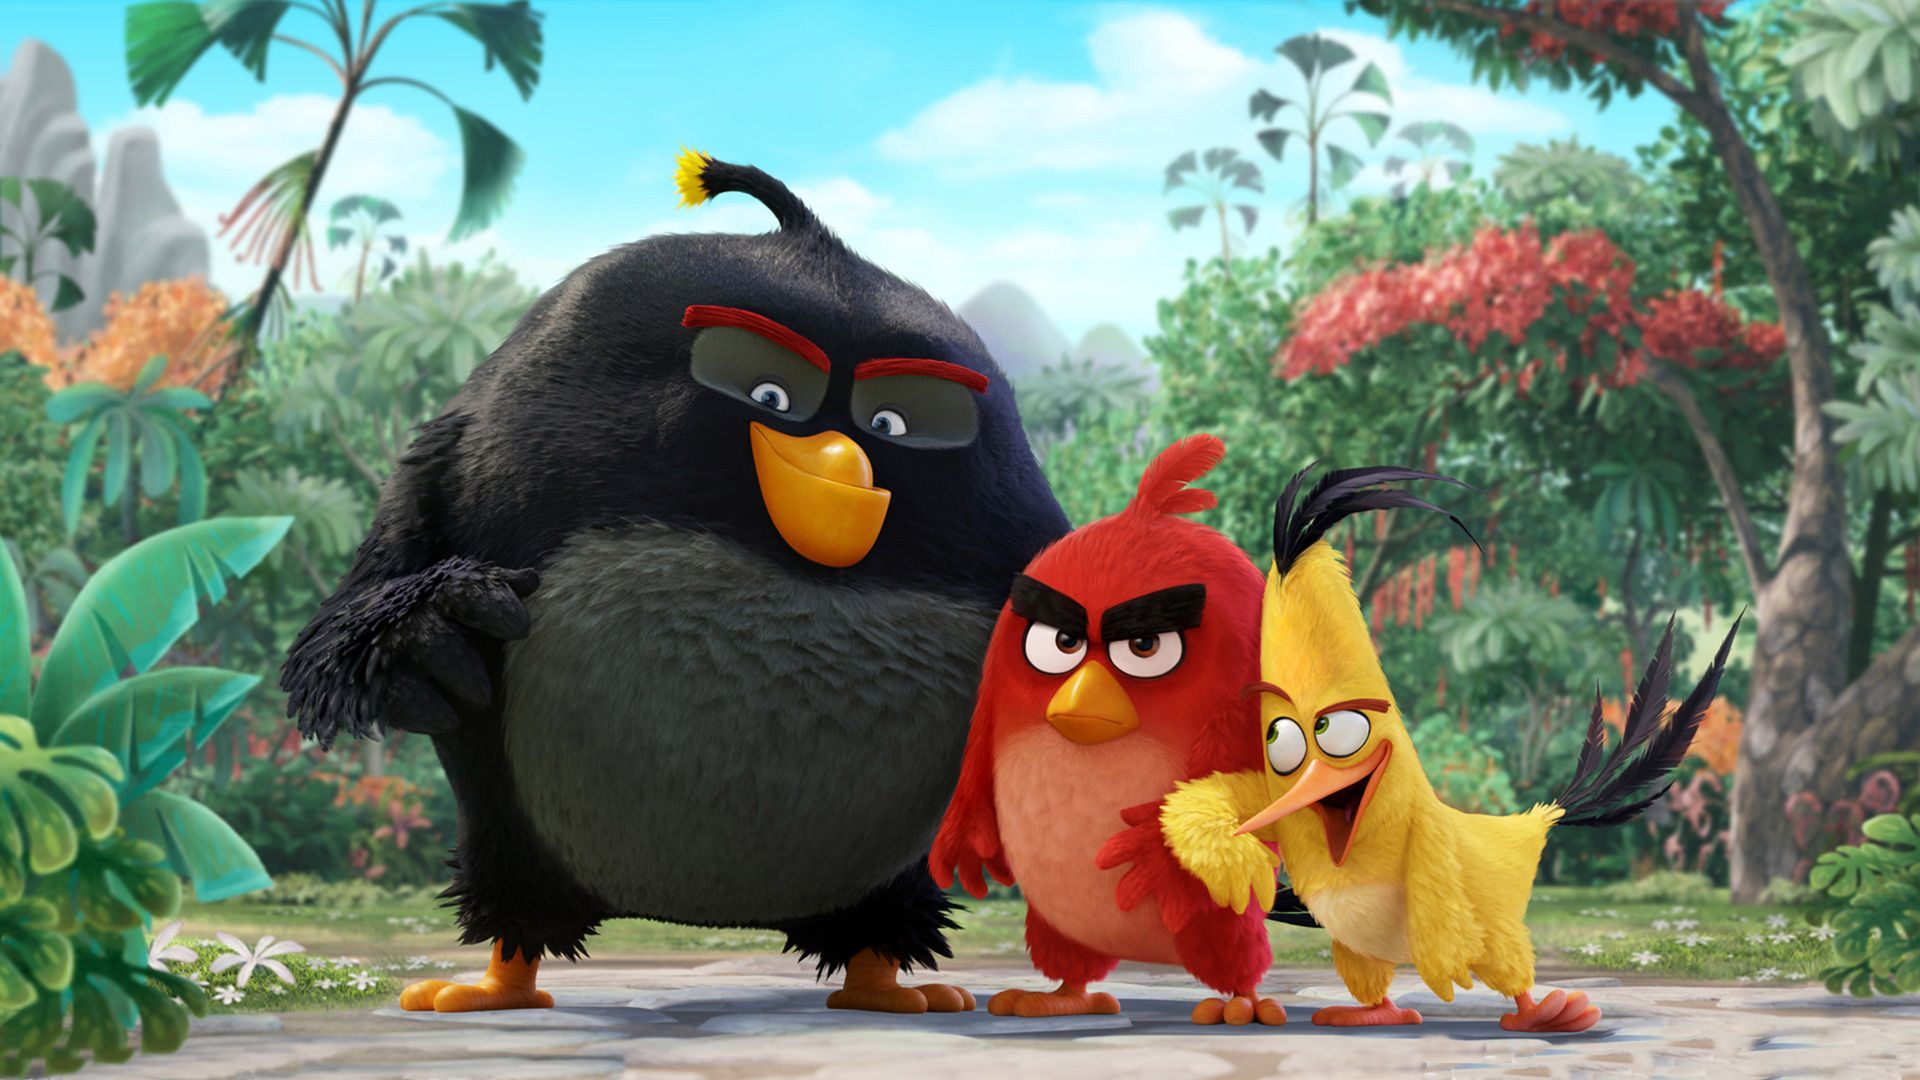 Hoạt hình ‘Angry Birds’ – Lời giải cơn giận của các chú chim